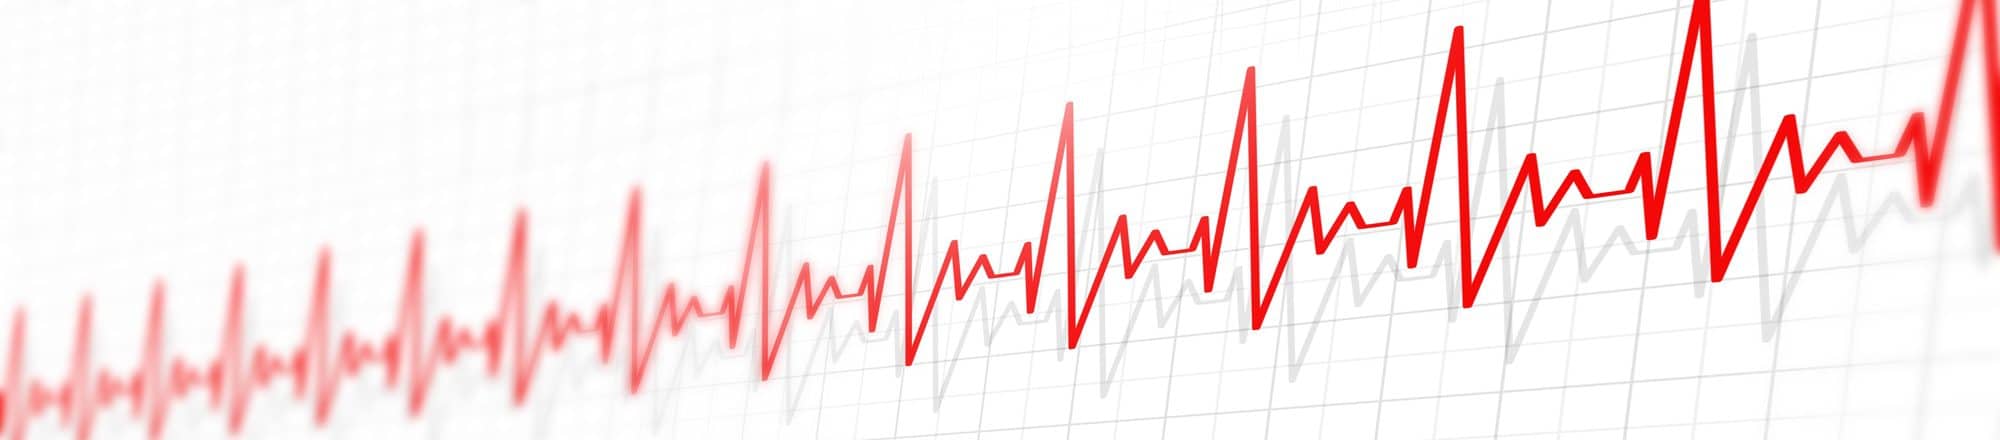 גרף מתוך בדיקת קצב לב שהתבצעה בקרדיוטים המצביע על טכיקרדיה - הפרעה בקצב הלב של המטופל